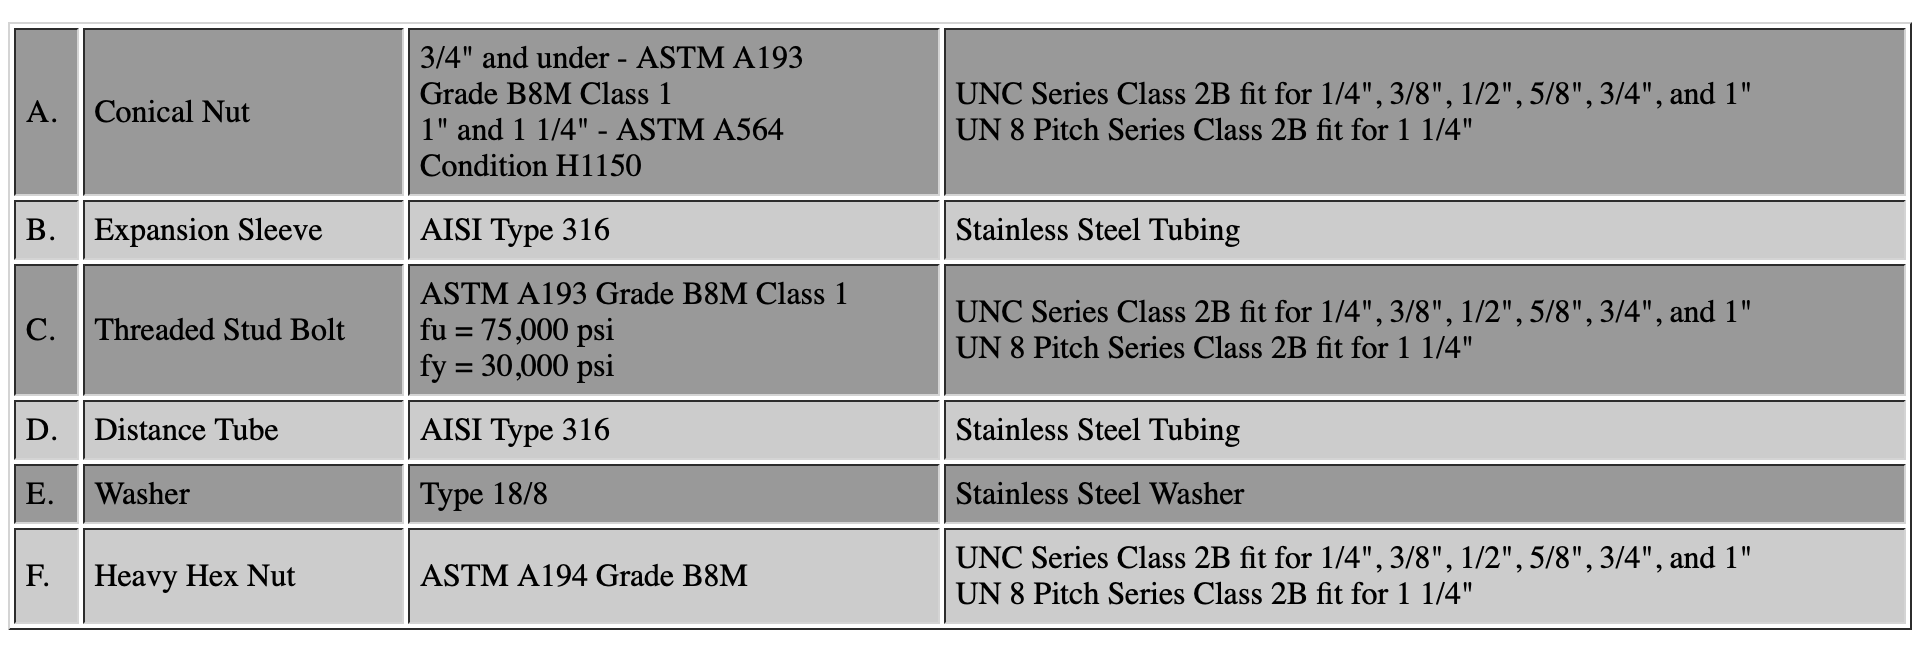 ASTM A193 Grade B8M - Class 1